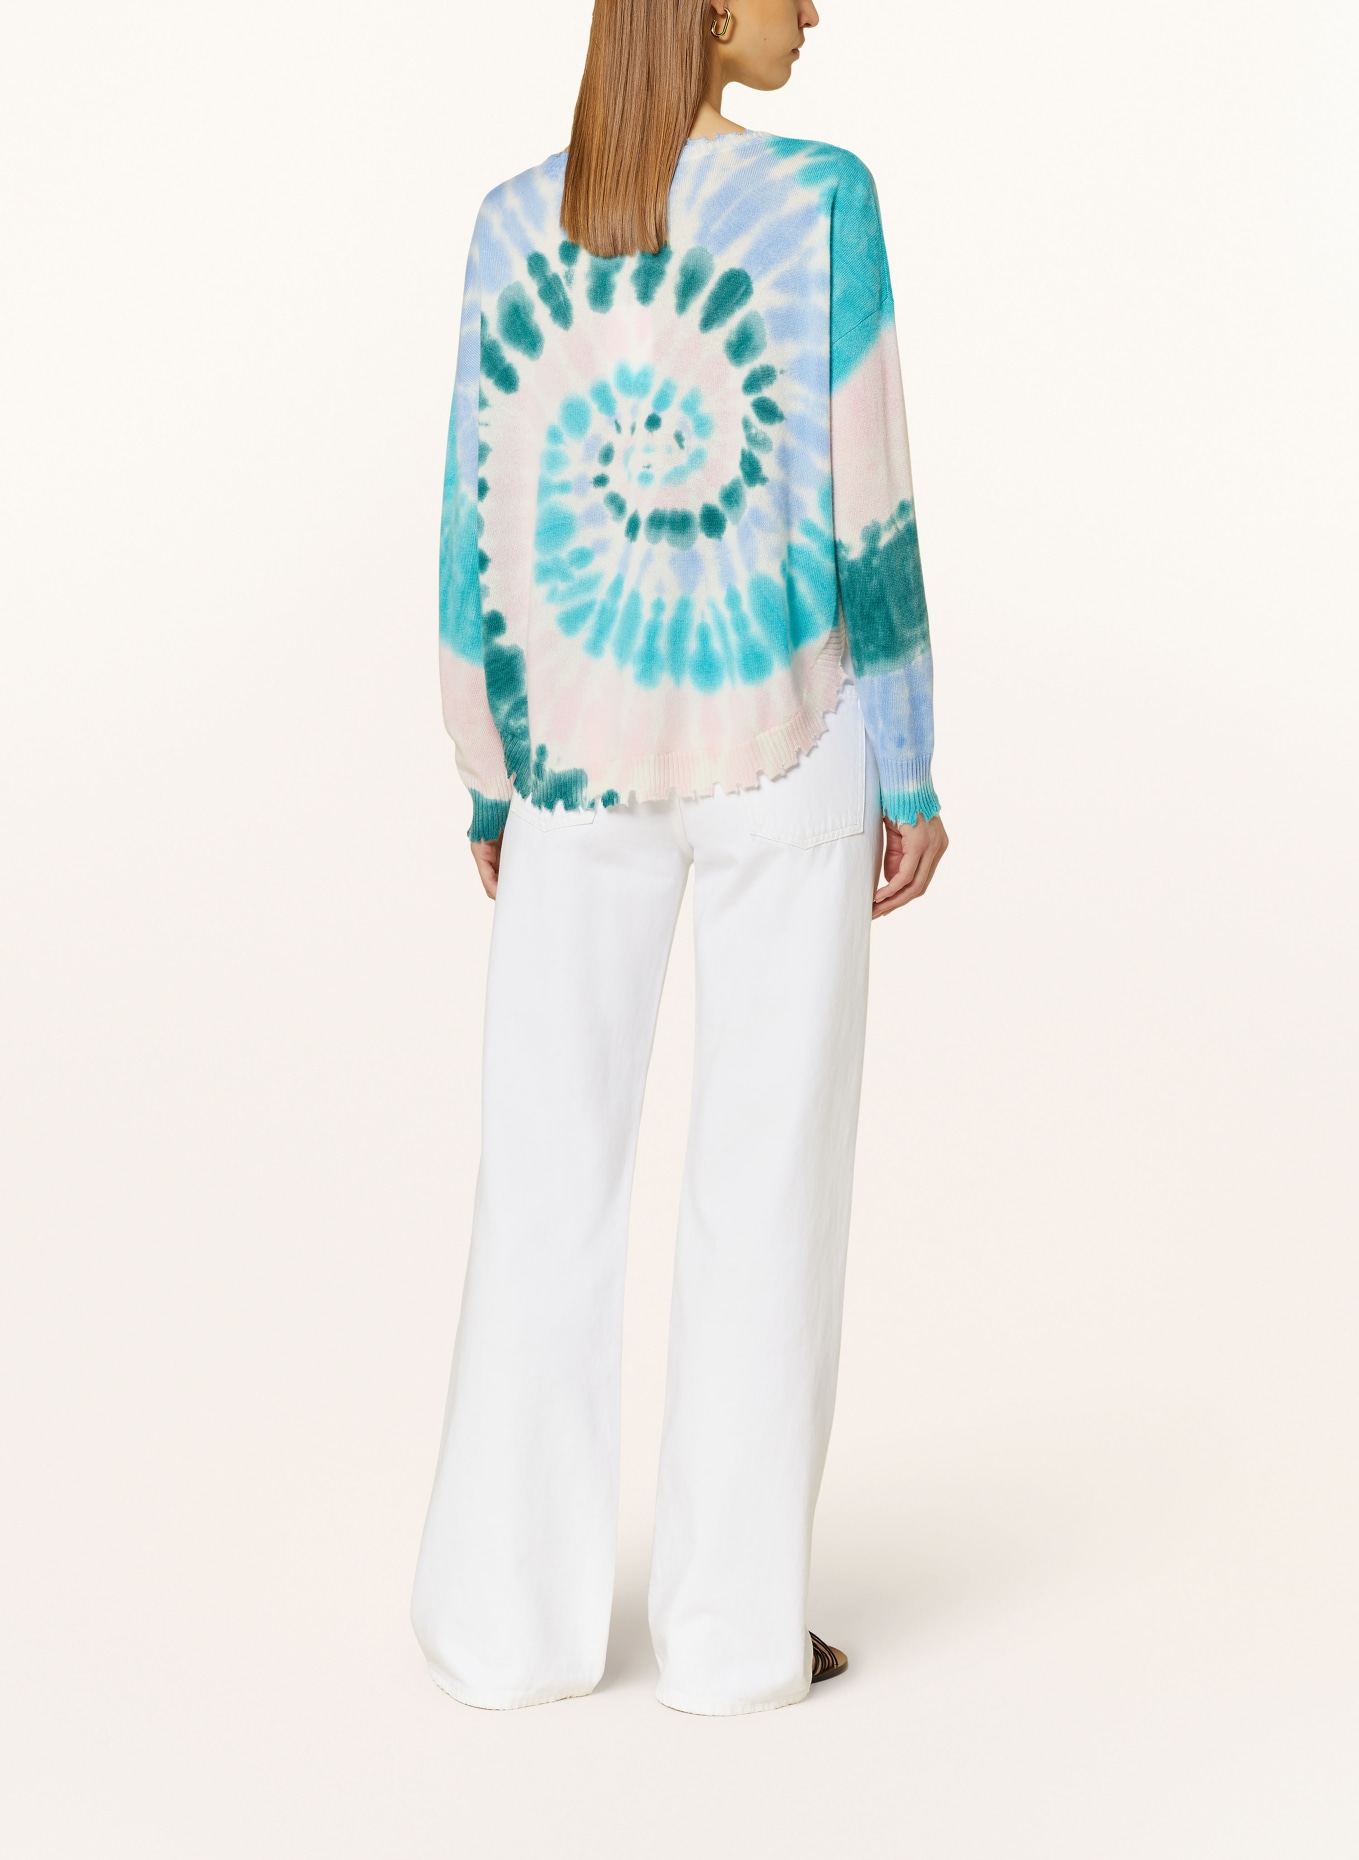 KUJTEN Cashmere sweater MELA SUNNY, Color: BLUE/ GREEN/ LIGHT PINK (Image 3)